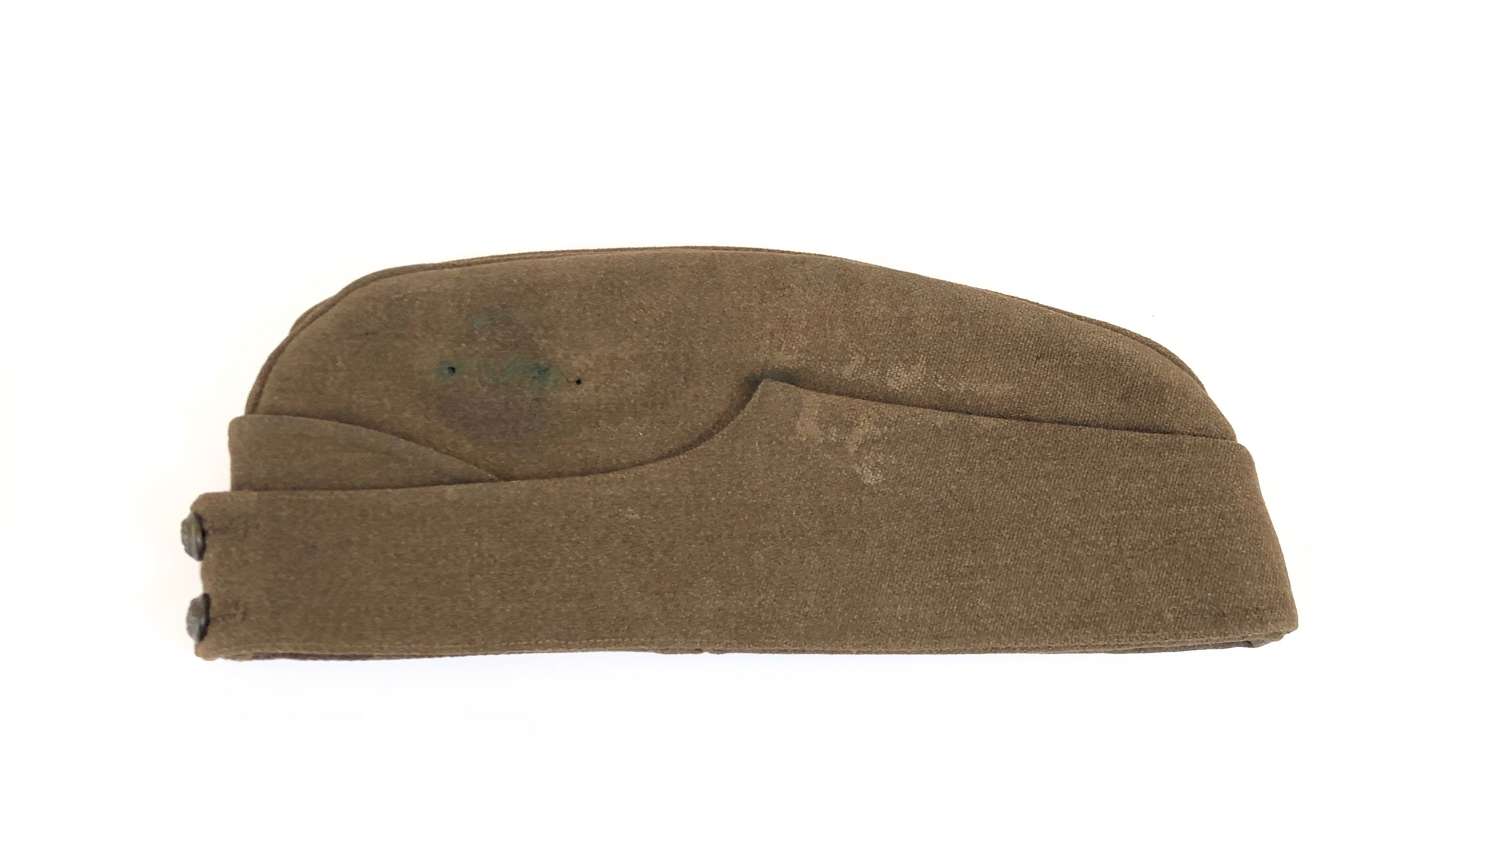 WW2 Period British Officer’s Side Cap.